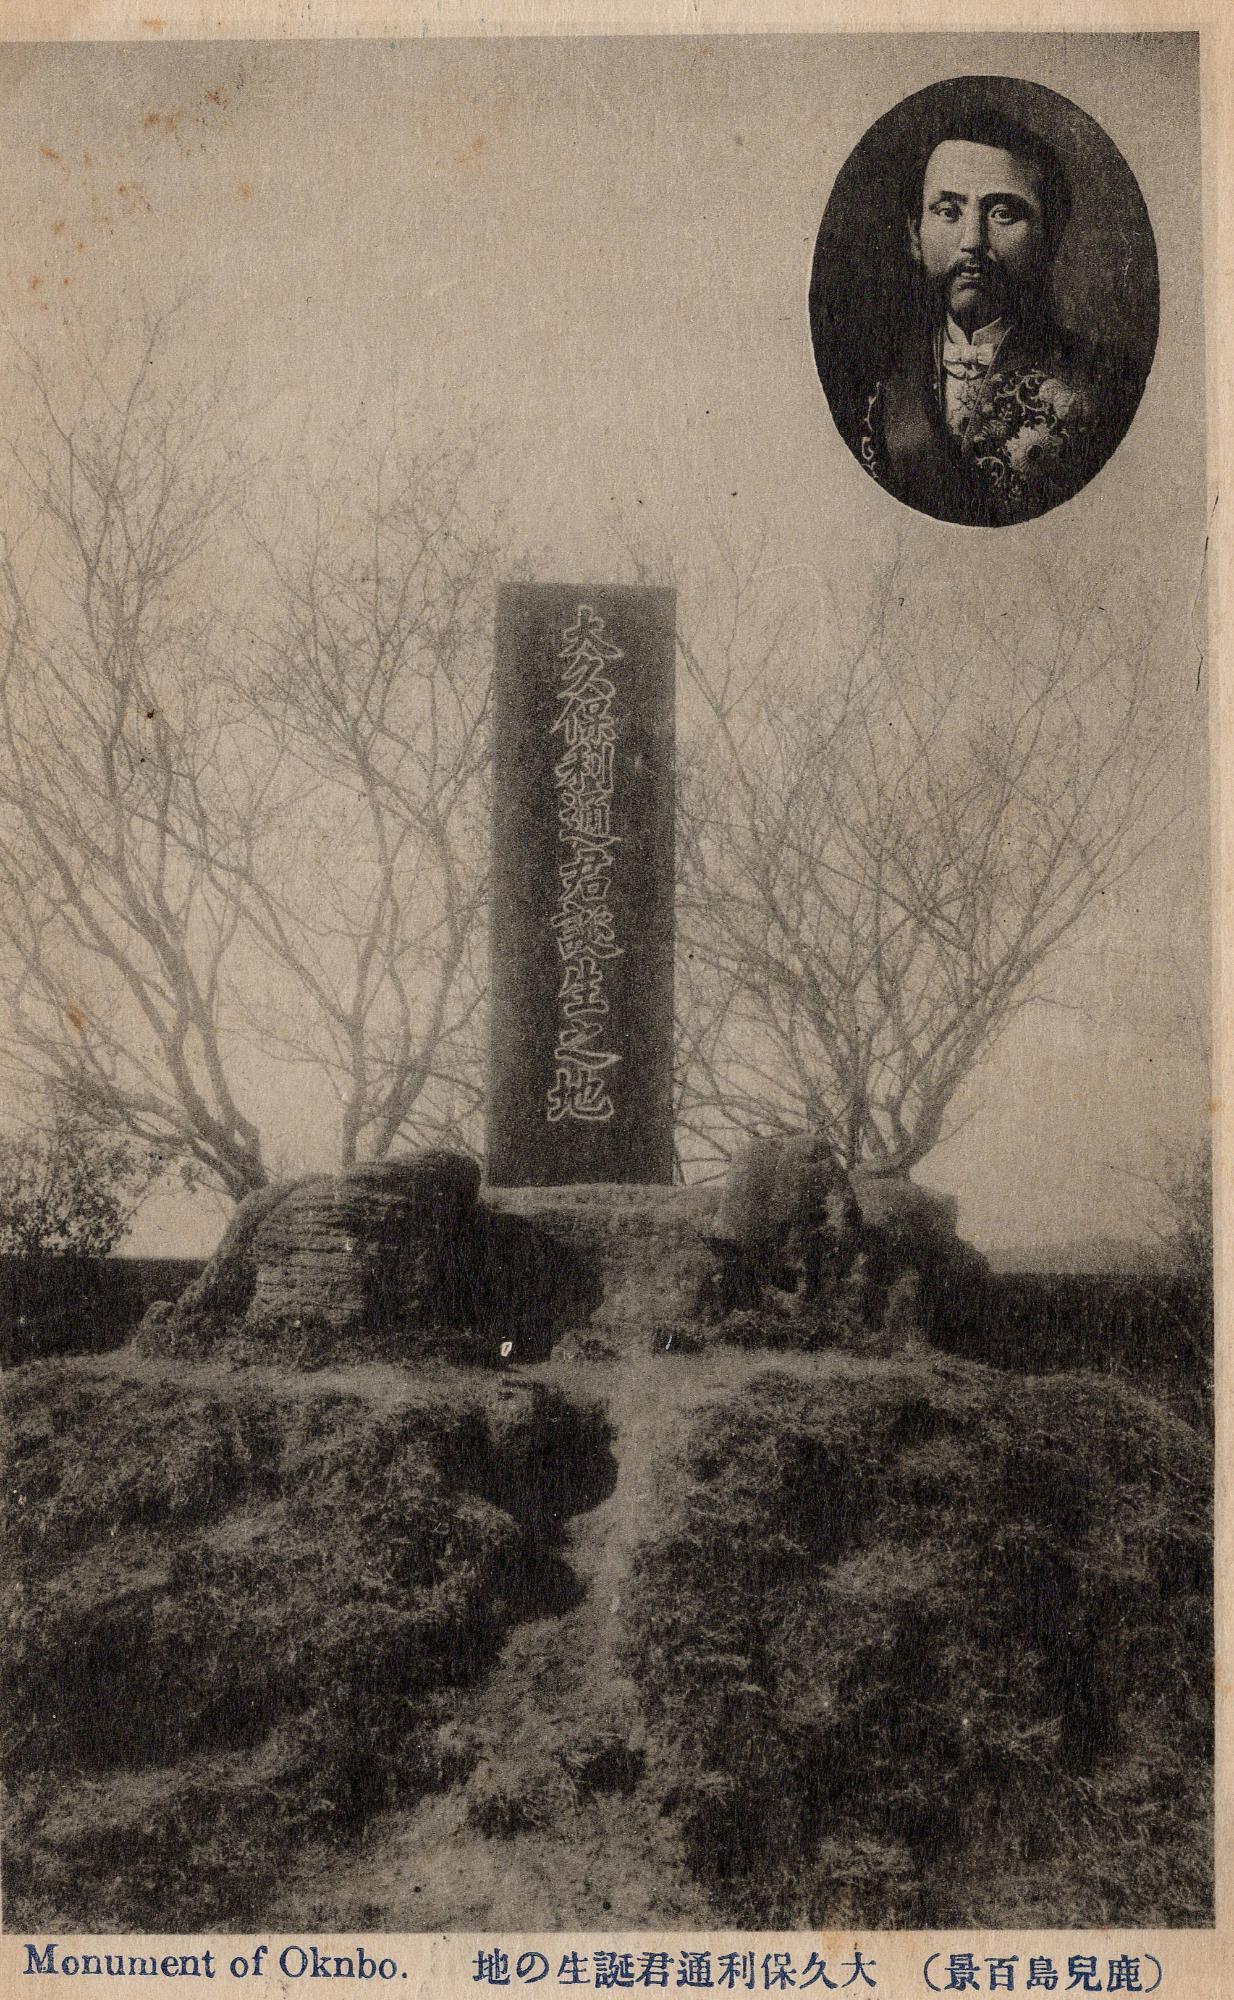 丘の上の葉っぱがついていない枝に囲われた大久保利通君誕生之地と書かれた石碑と右上に肖像画がある白黒写真